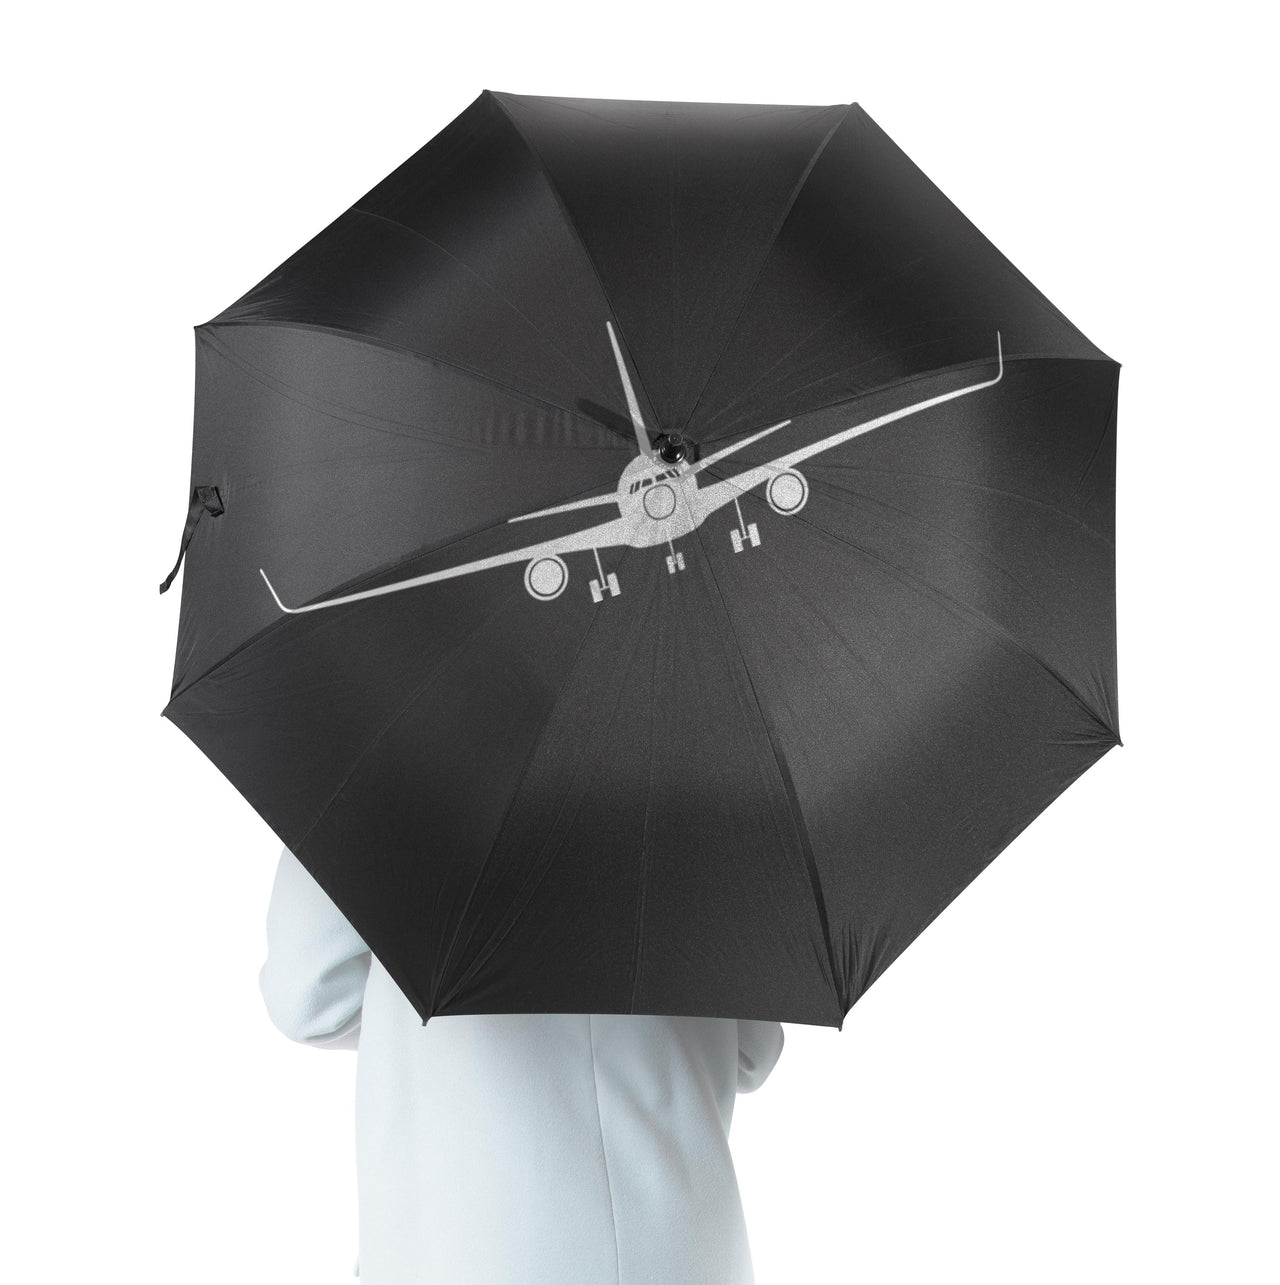 Copy of Boeing 757 Silhouette Designed Umbrella